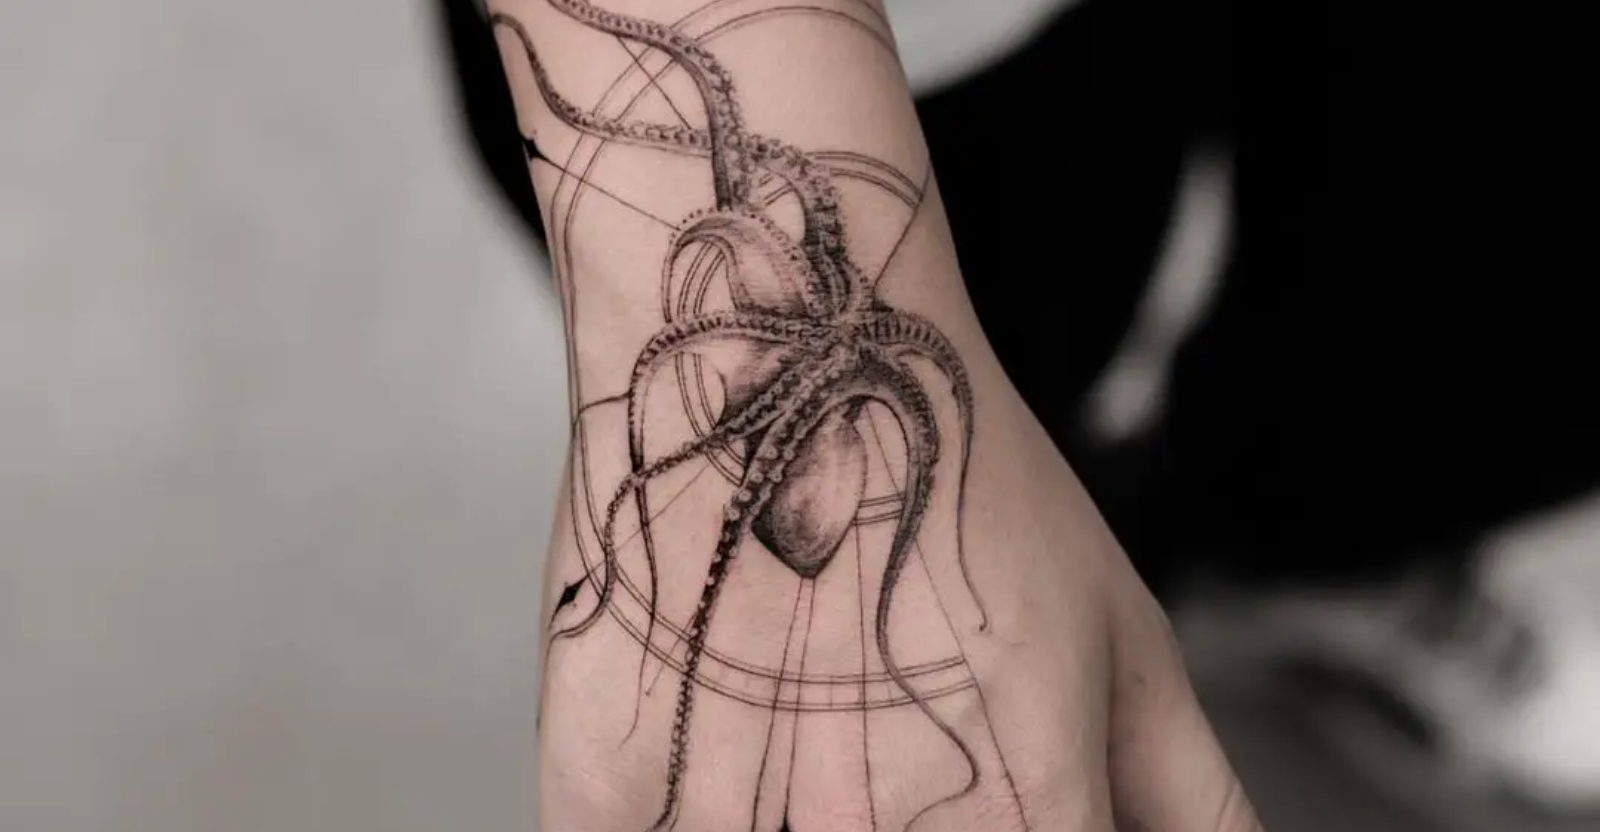 Octopus tattoo ideas 1